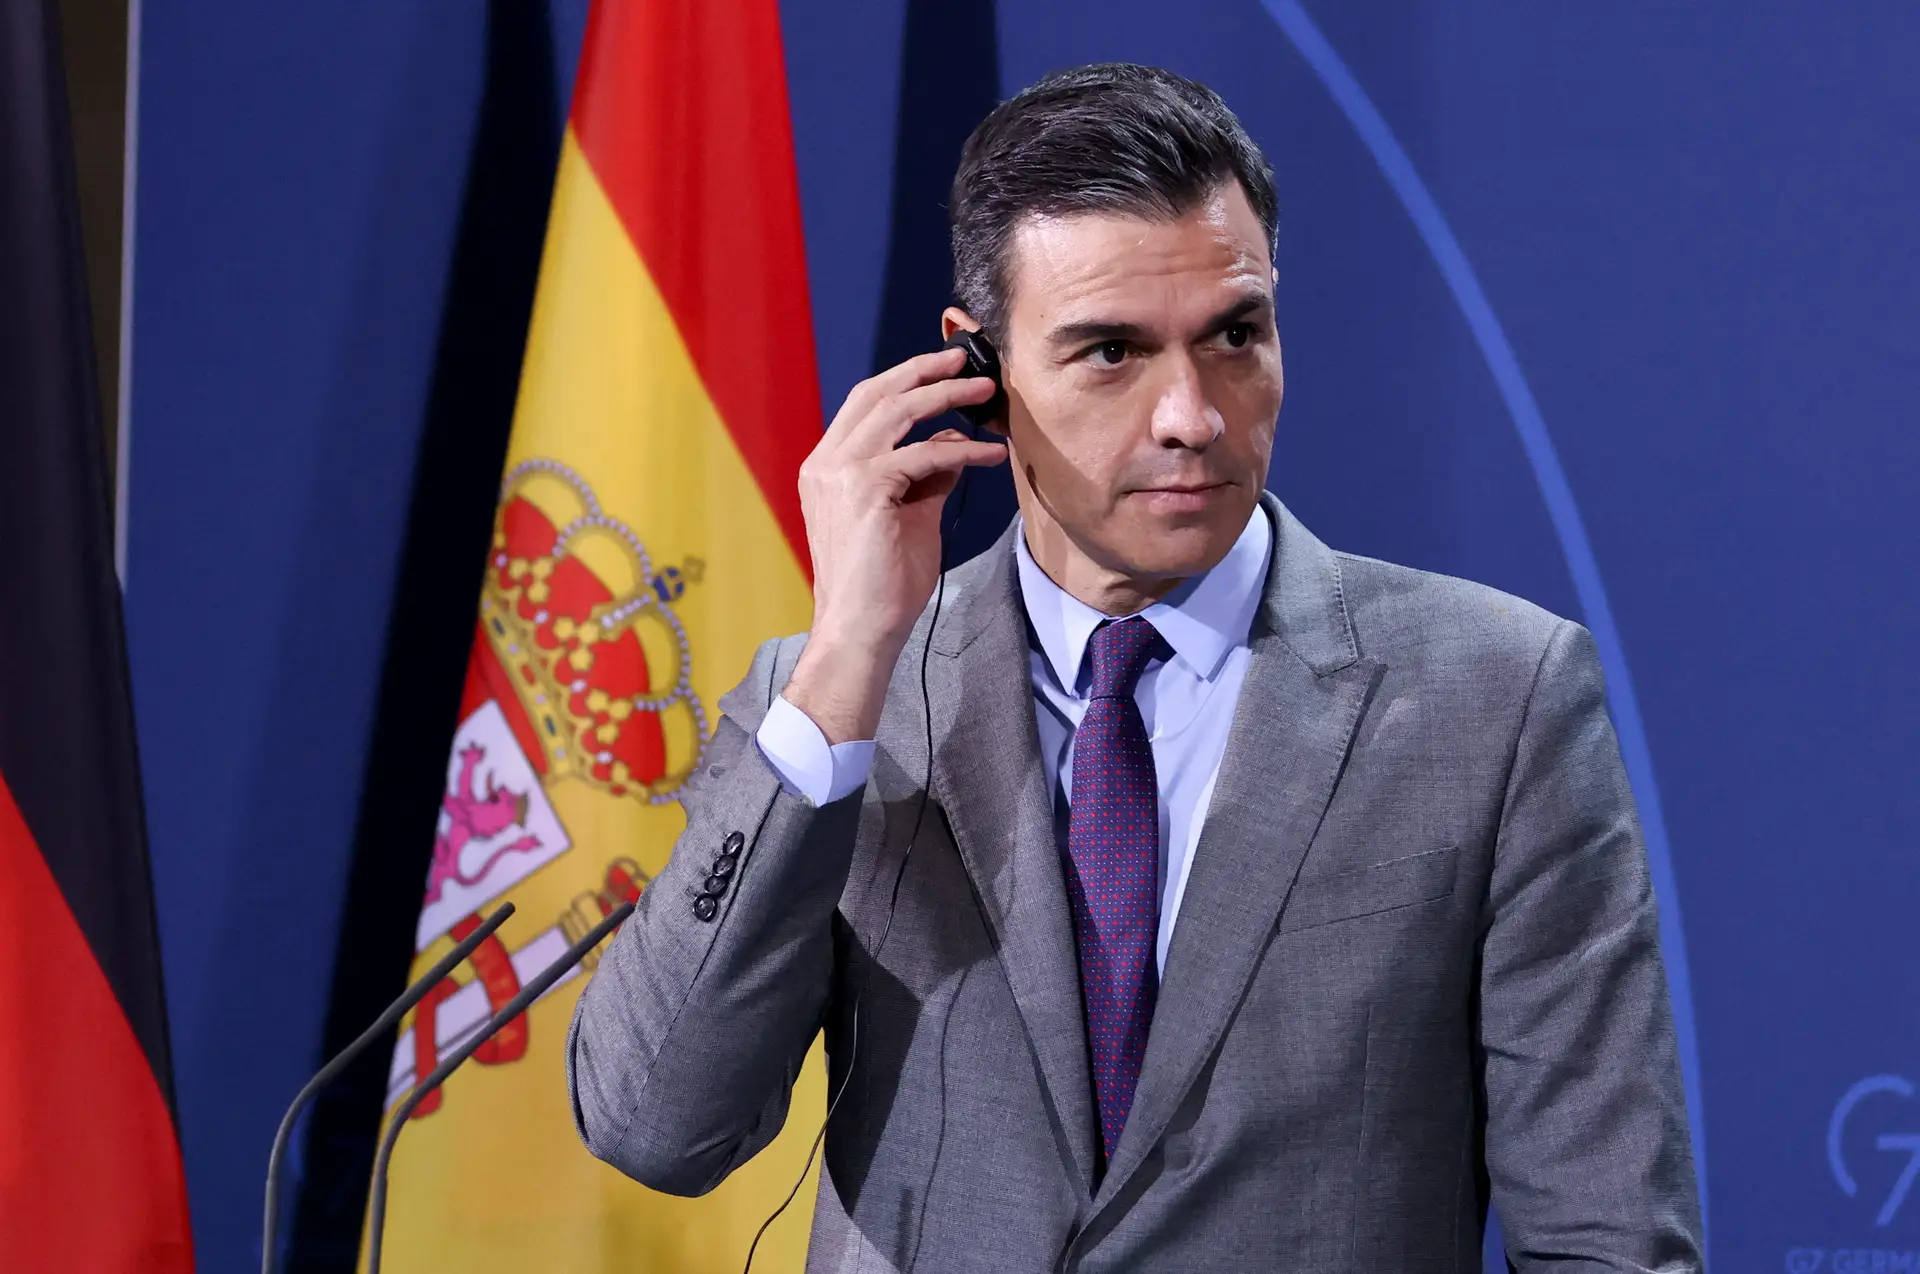 Выборы президента испании